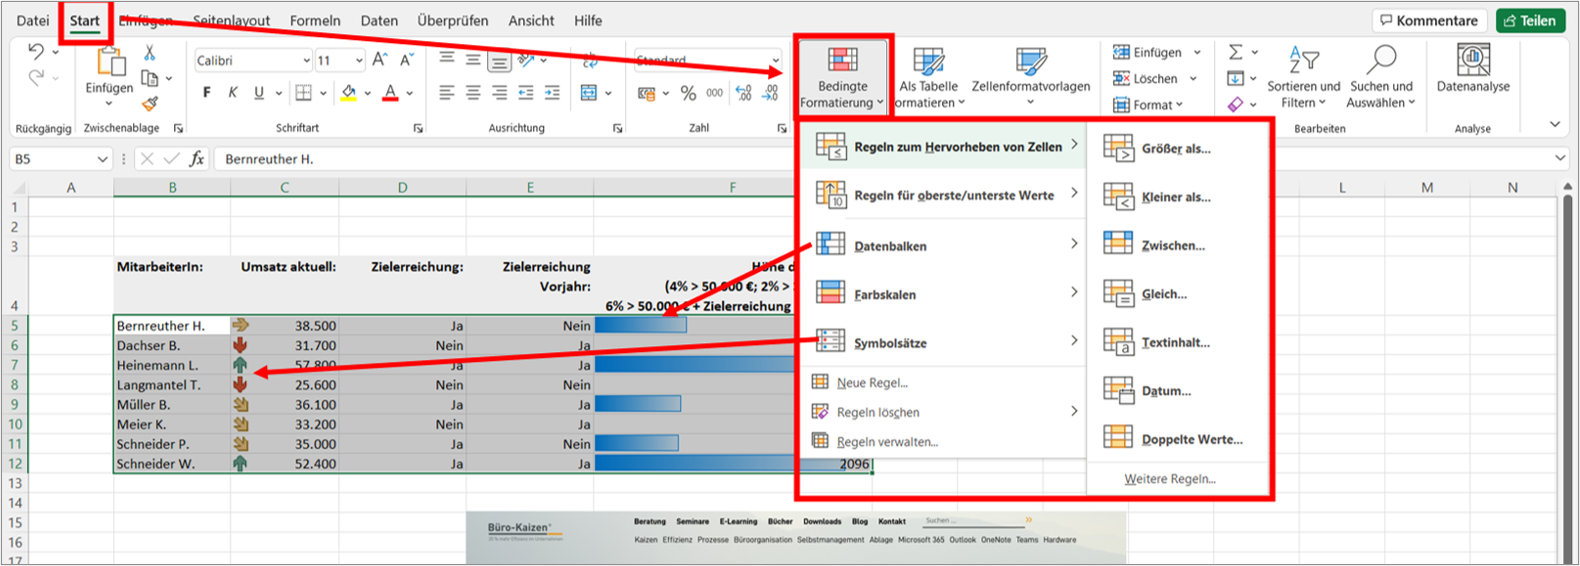 Bei der bedingten Formatierung in Excel stehen Ihnen die verschiedensten Formatierungsmöglichkeiten zur Verfügung, z.B. mit Farbverlauf, passenden Symbolen oder einem Balkendiagramm. Bild: Microsoft Excel, Büro-Kaizen.